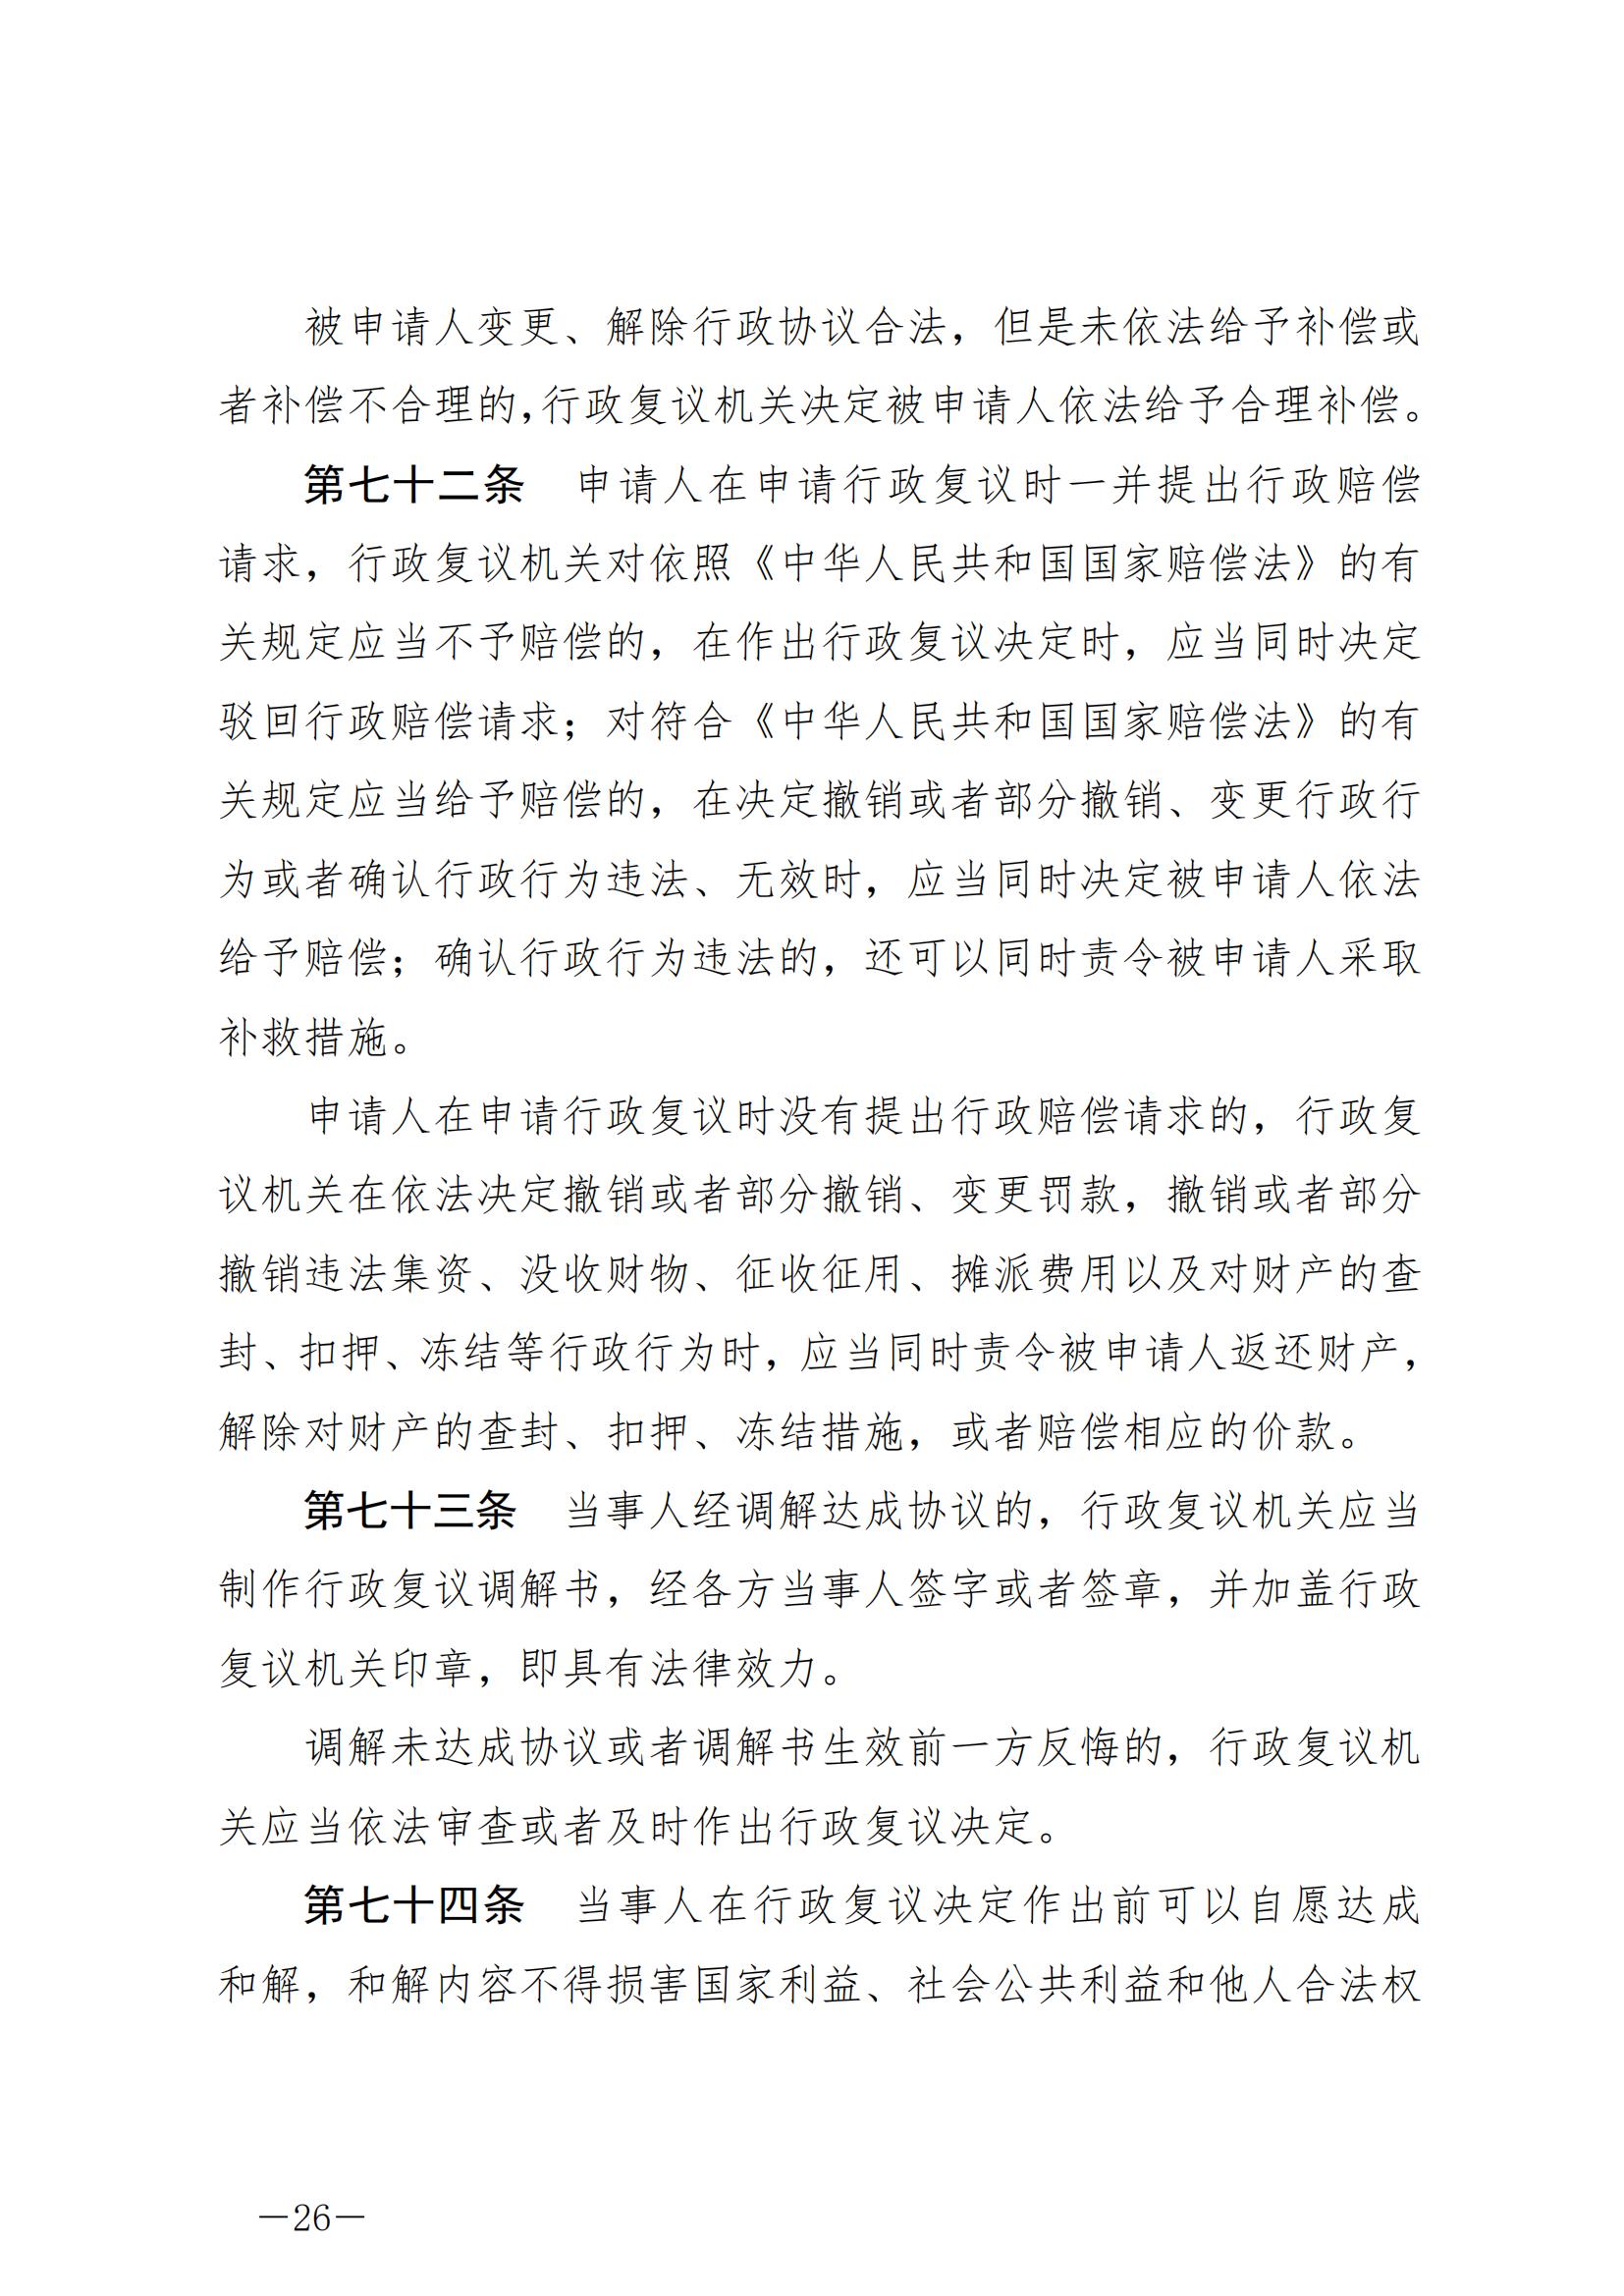 《中华人民共和国行政复议法》_20231204154310_25.jpg